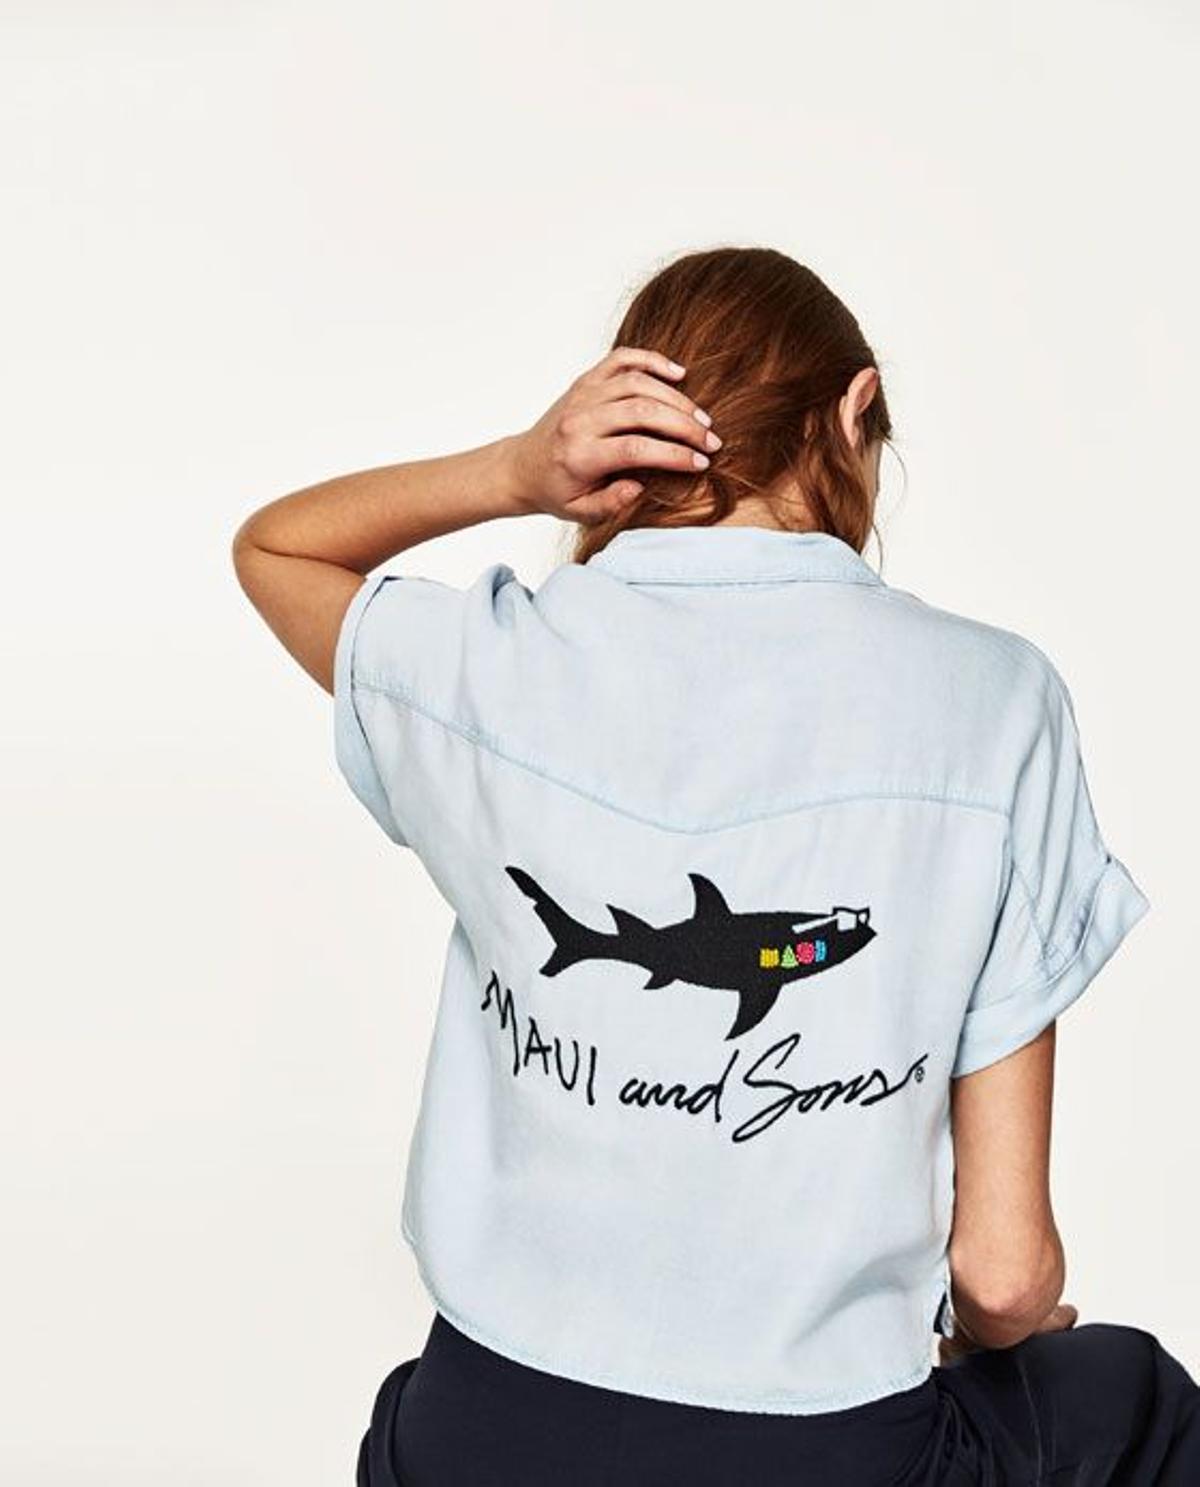 Colaboración de Zara con Maui and Sons: camisa de manga corta